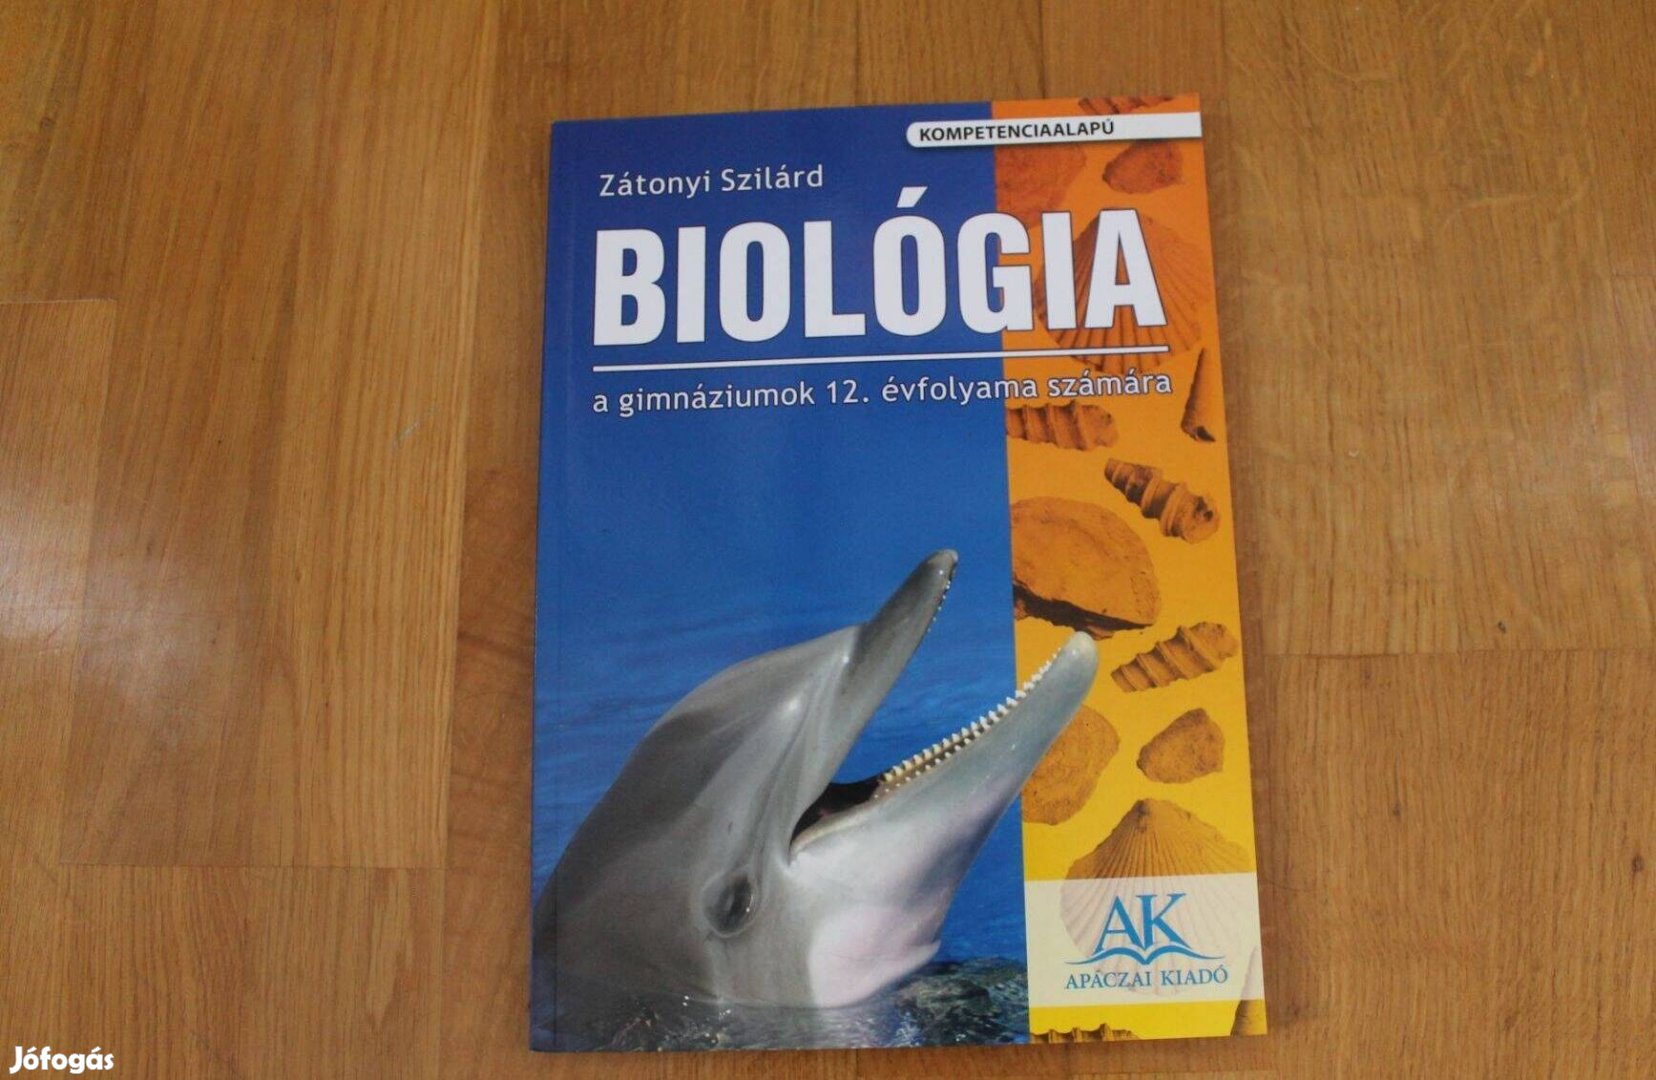 Biológia 12 - Apáczai kiadó ( kompetenciaalapú )